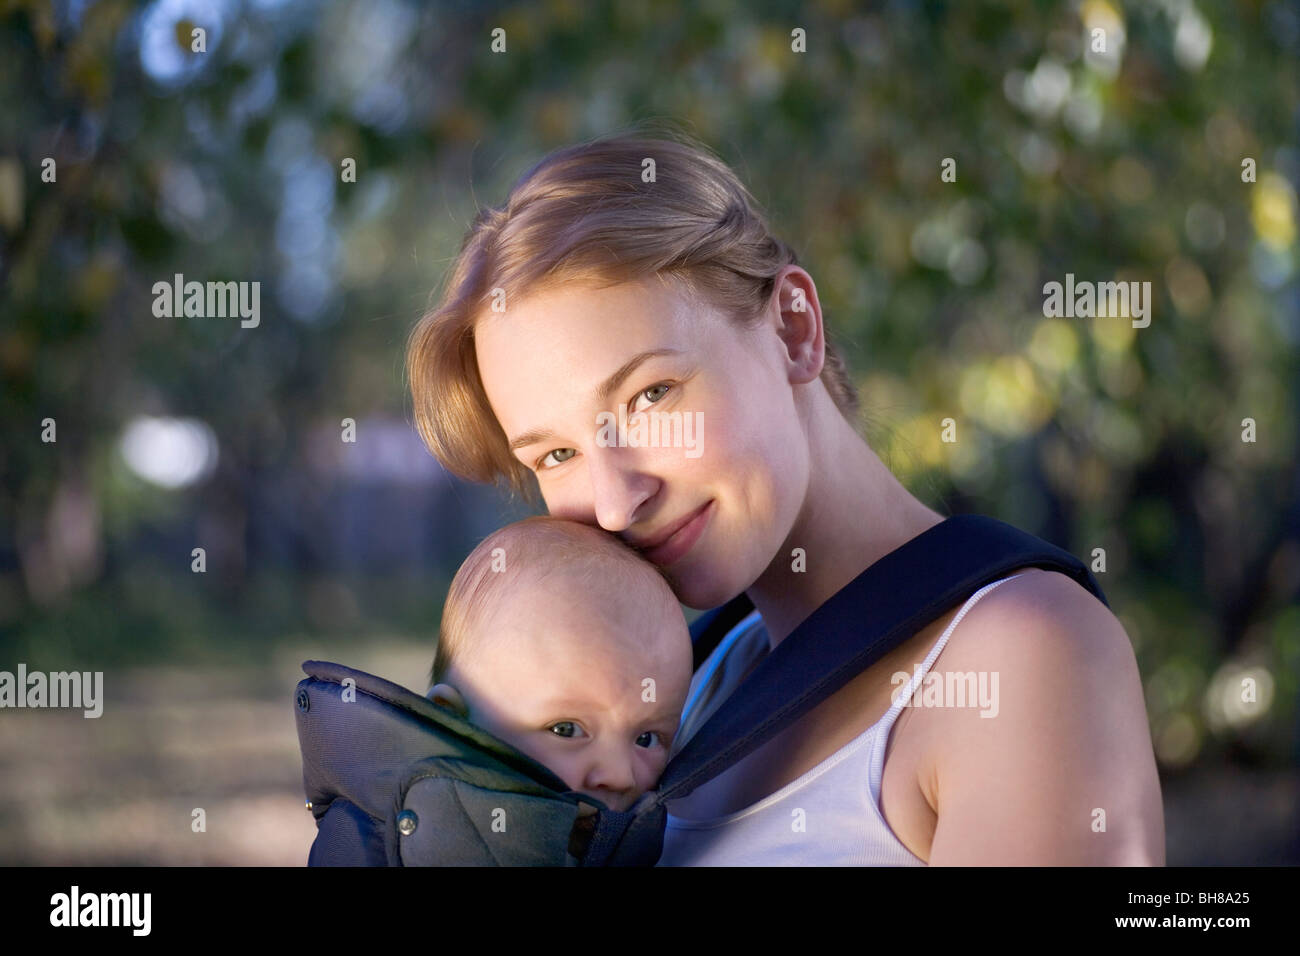 Eine Mutter mit ihrem Baby im Tragetuch, Porträt Stockfoto